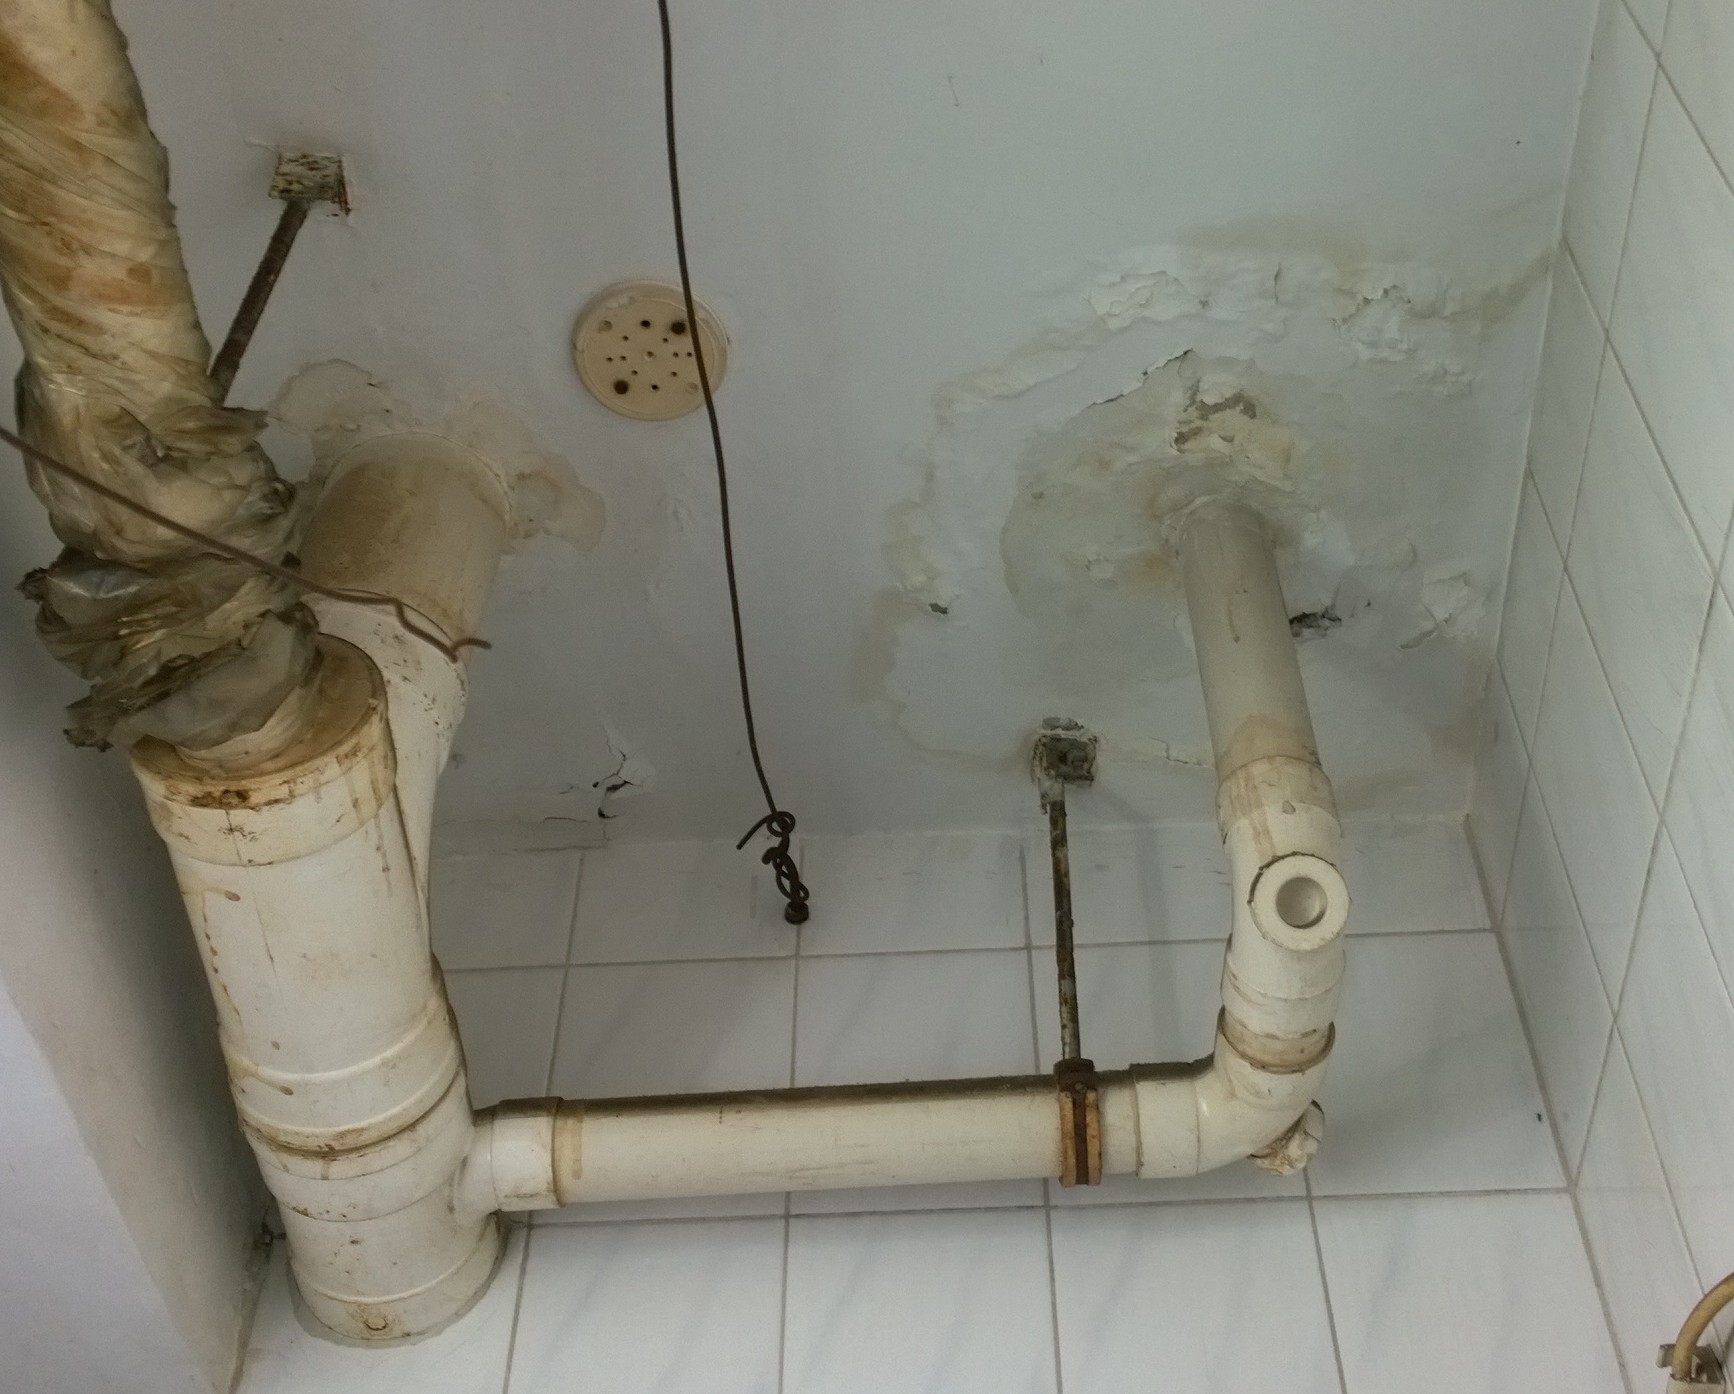 卫生间水管漏水照片图片